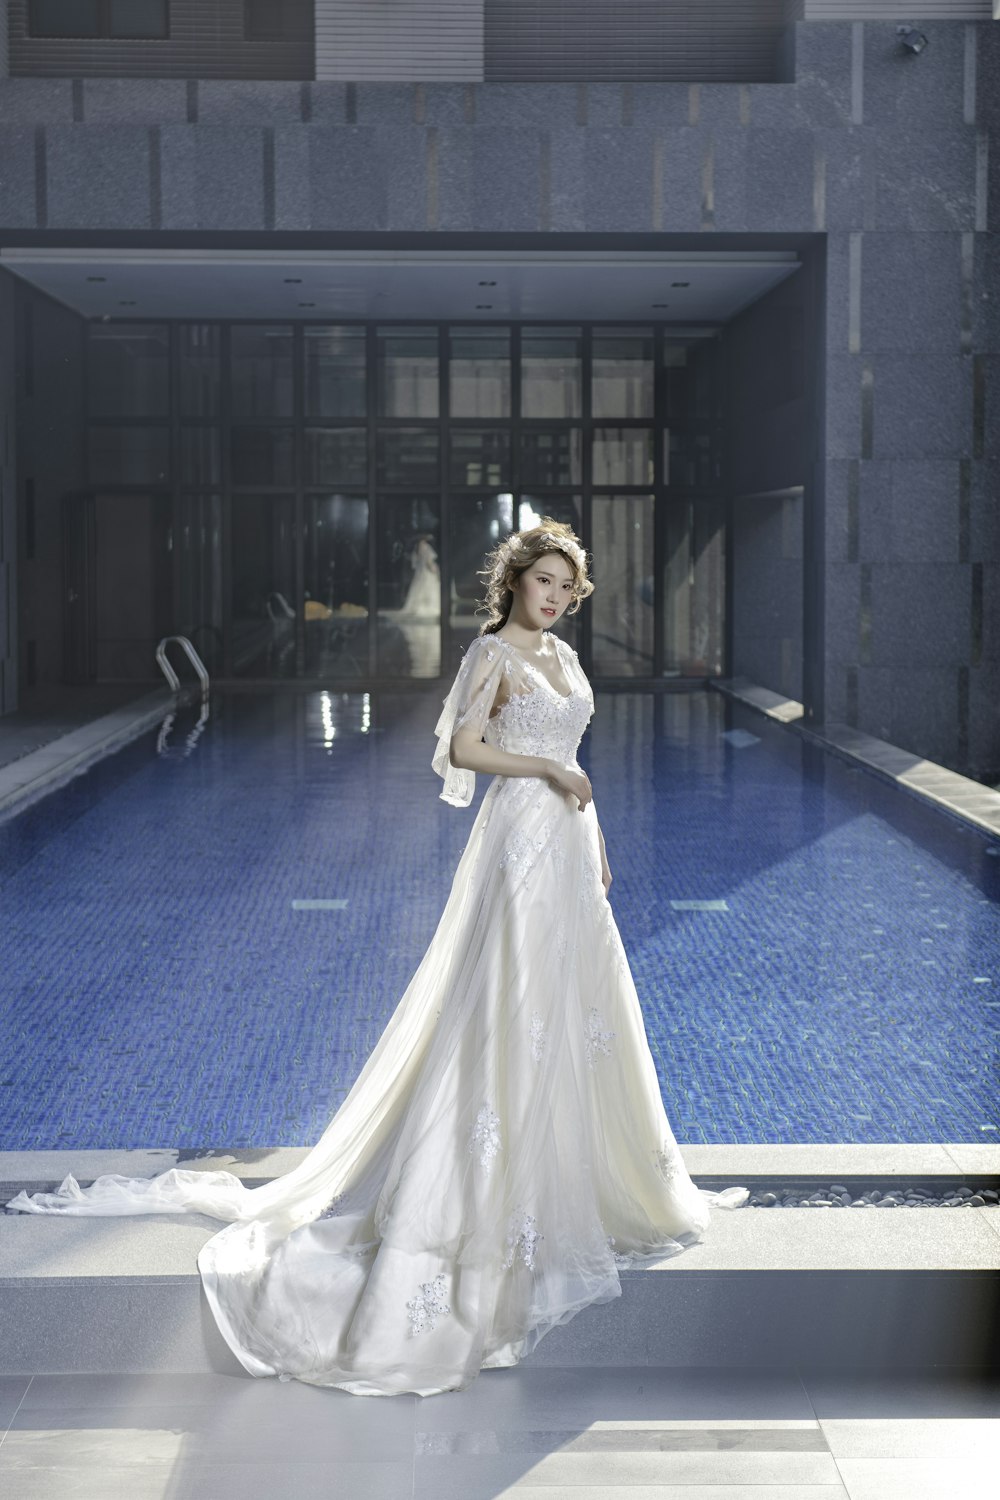 femme en robe blanche debout près de la piscine pendant la journée